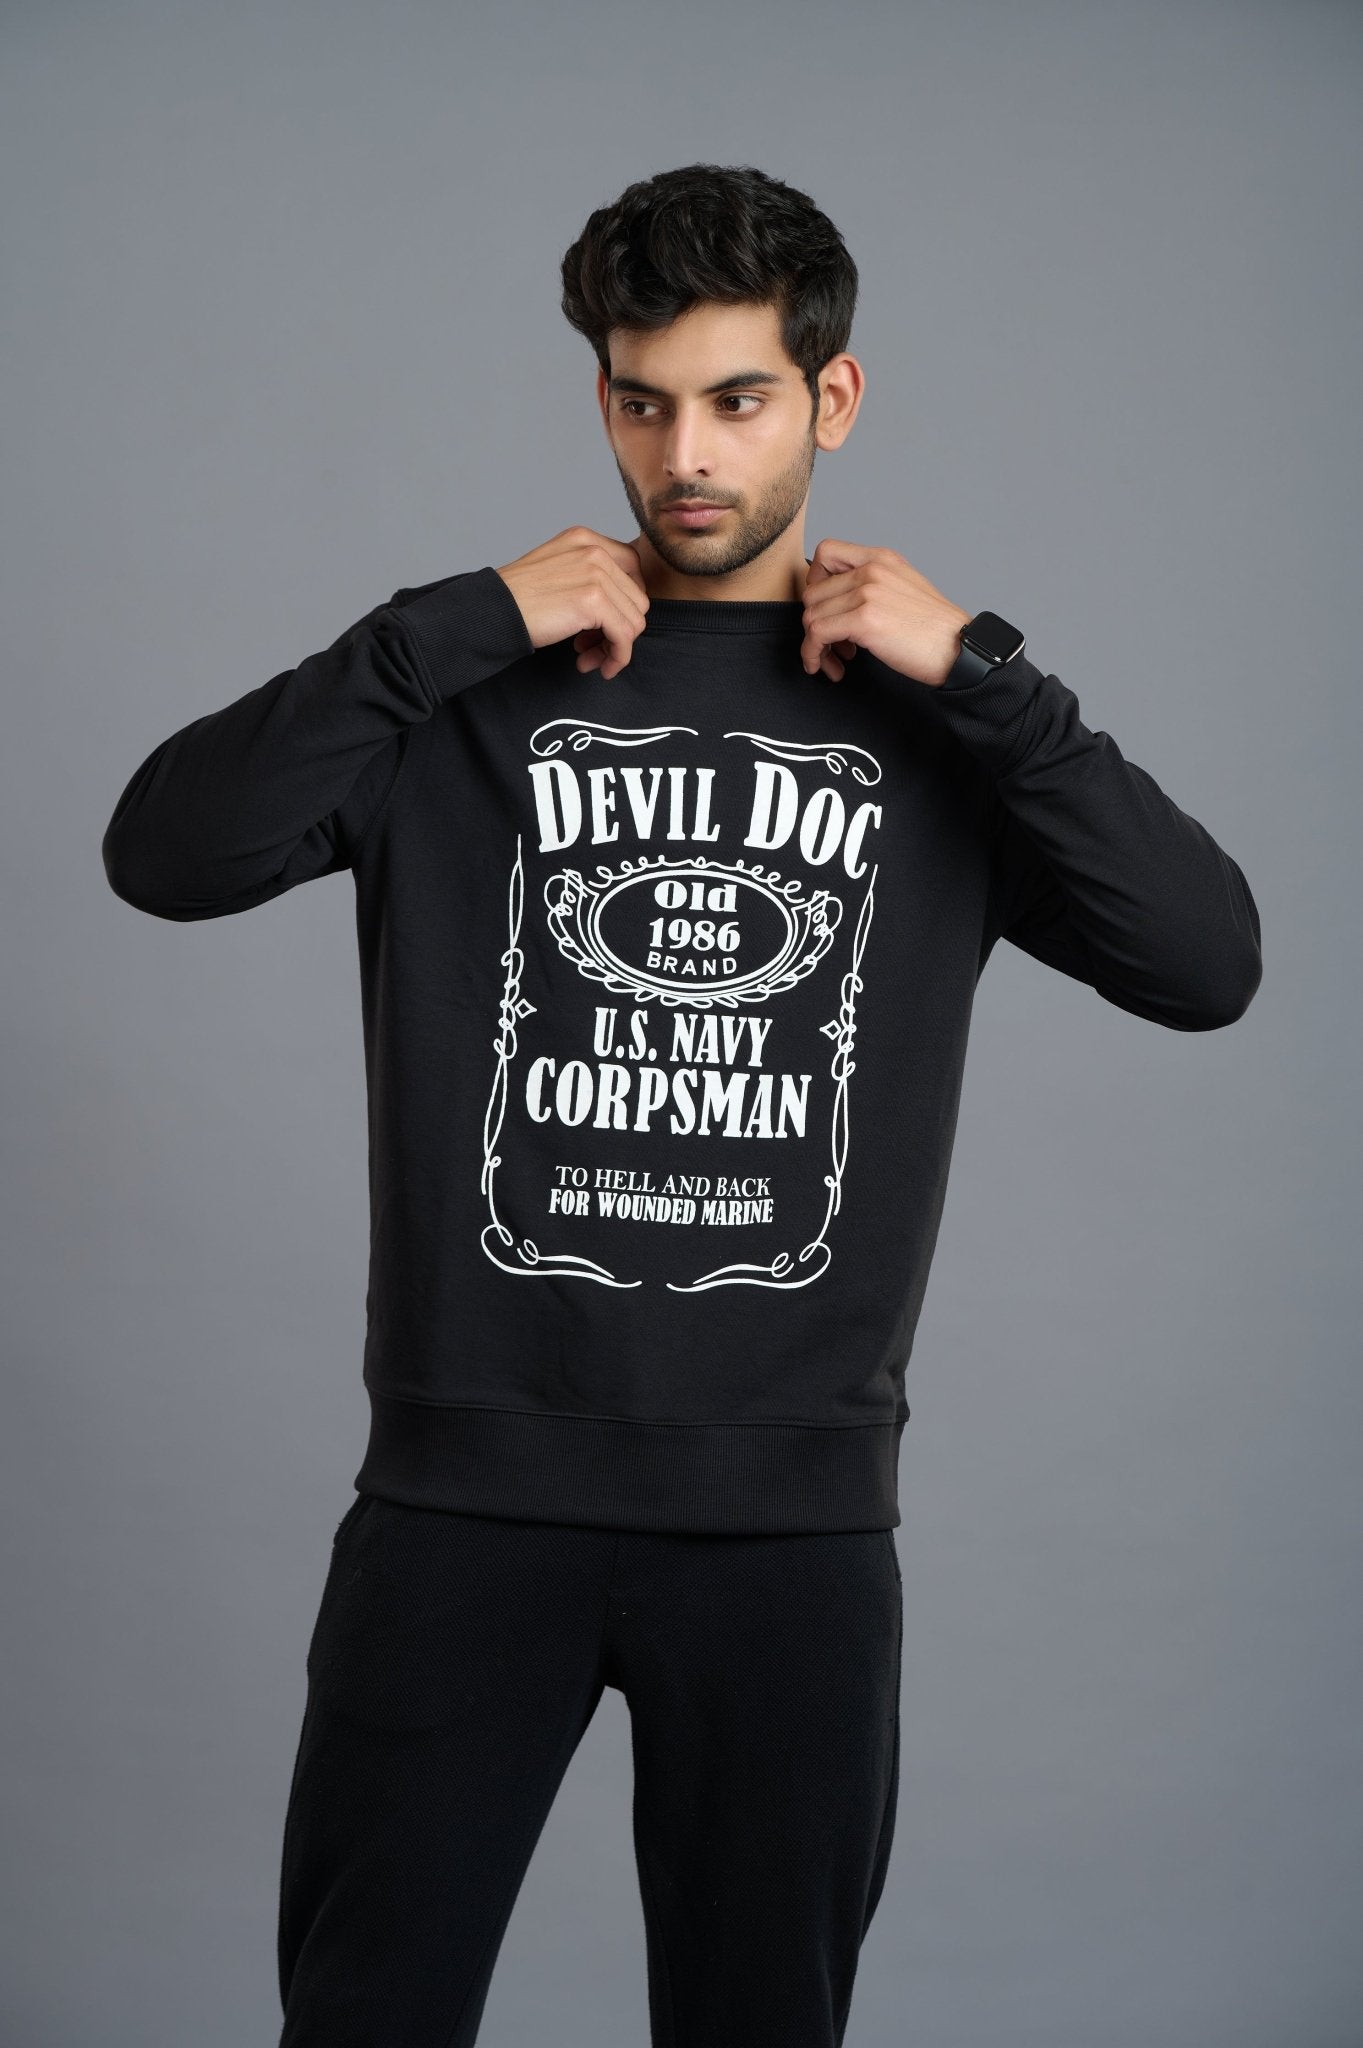 Devils Doctor Printed Black Sweatshirt for Men - Go Devil